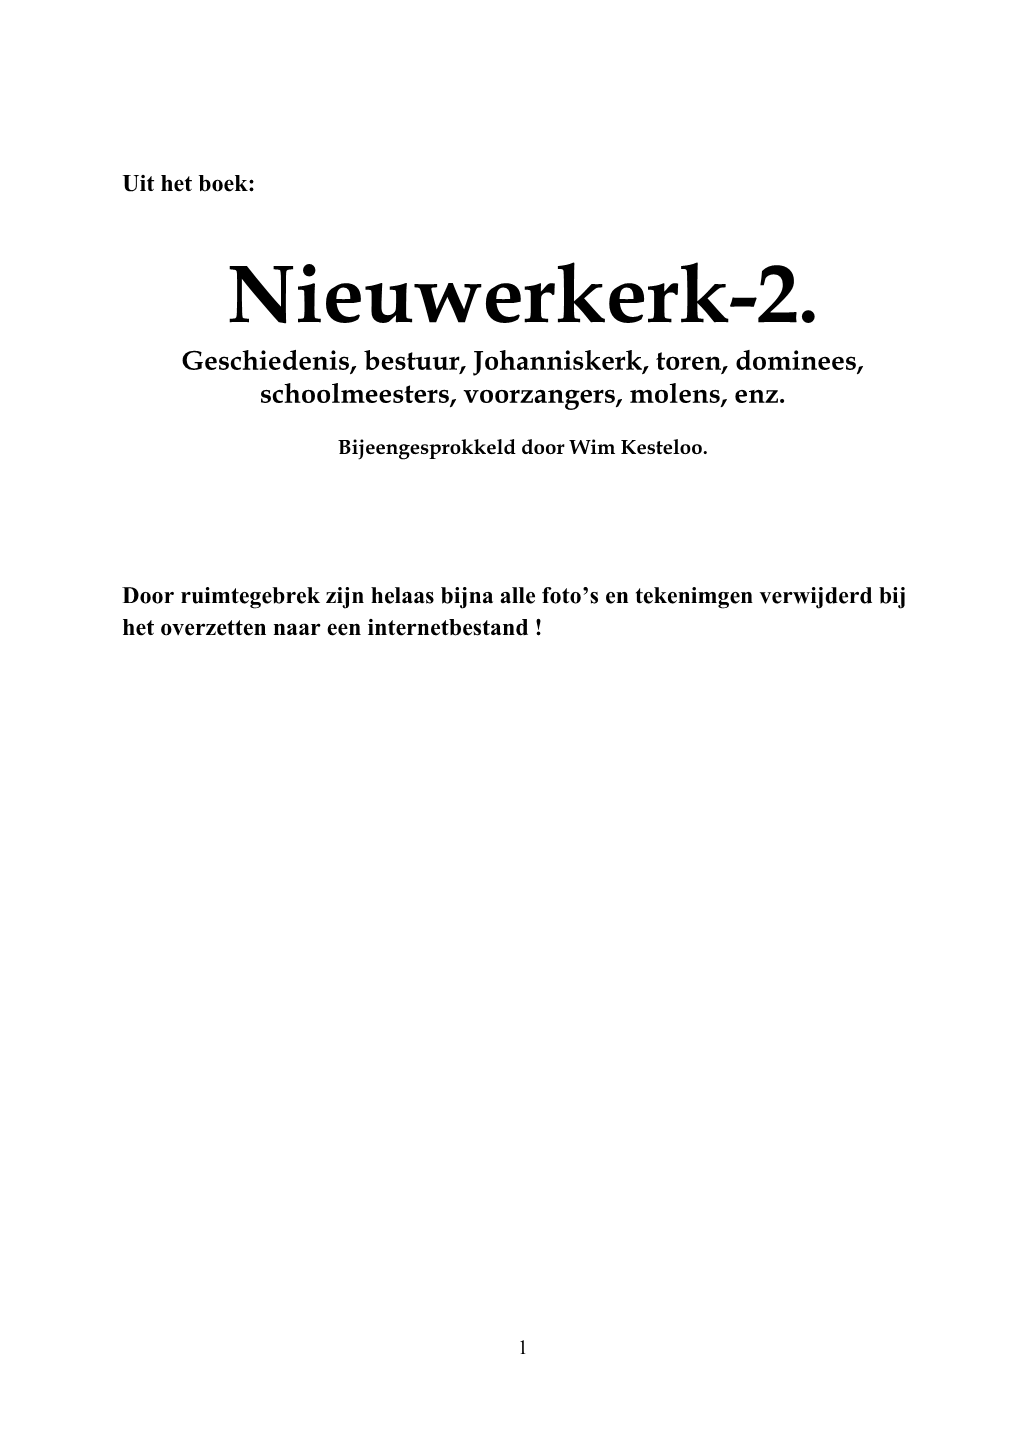 Nieuwerkerk-2. Geschiedenis, Bestuur, Johanniskerk, Toren, Dominees, Schoolmeesters, Voorzangers, Molens, Enz